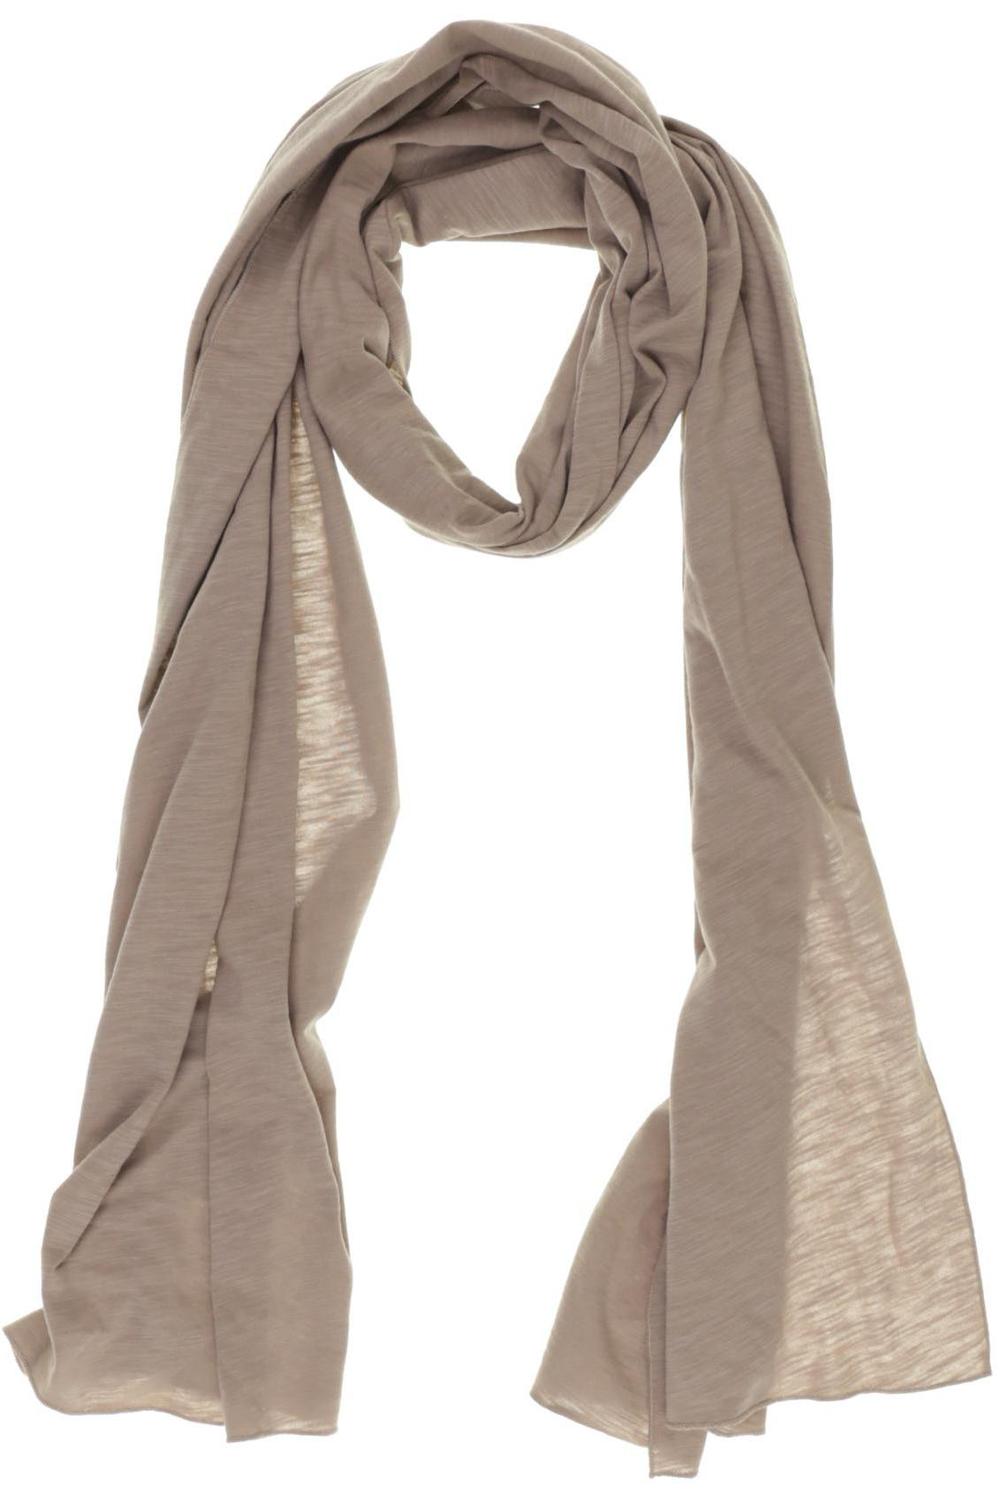 Hess Natur Schal Damen Tuch Baumwolle braun #46adb88 | eBay